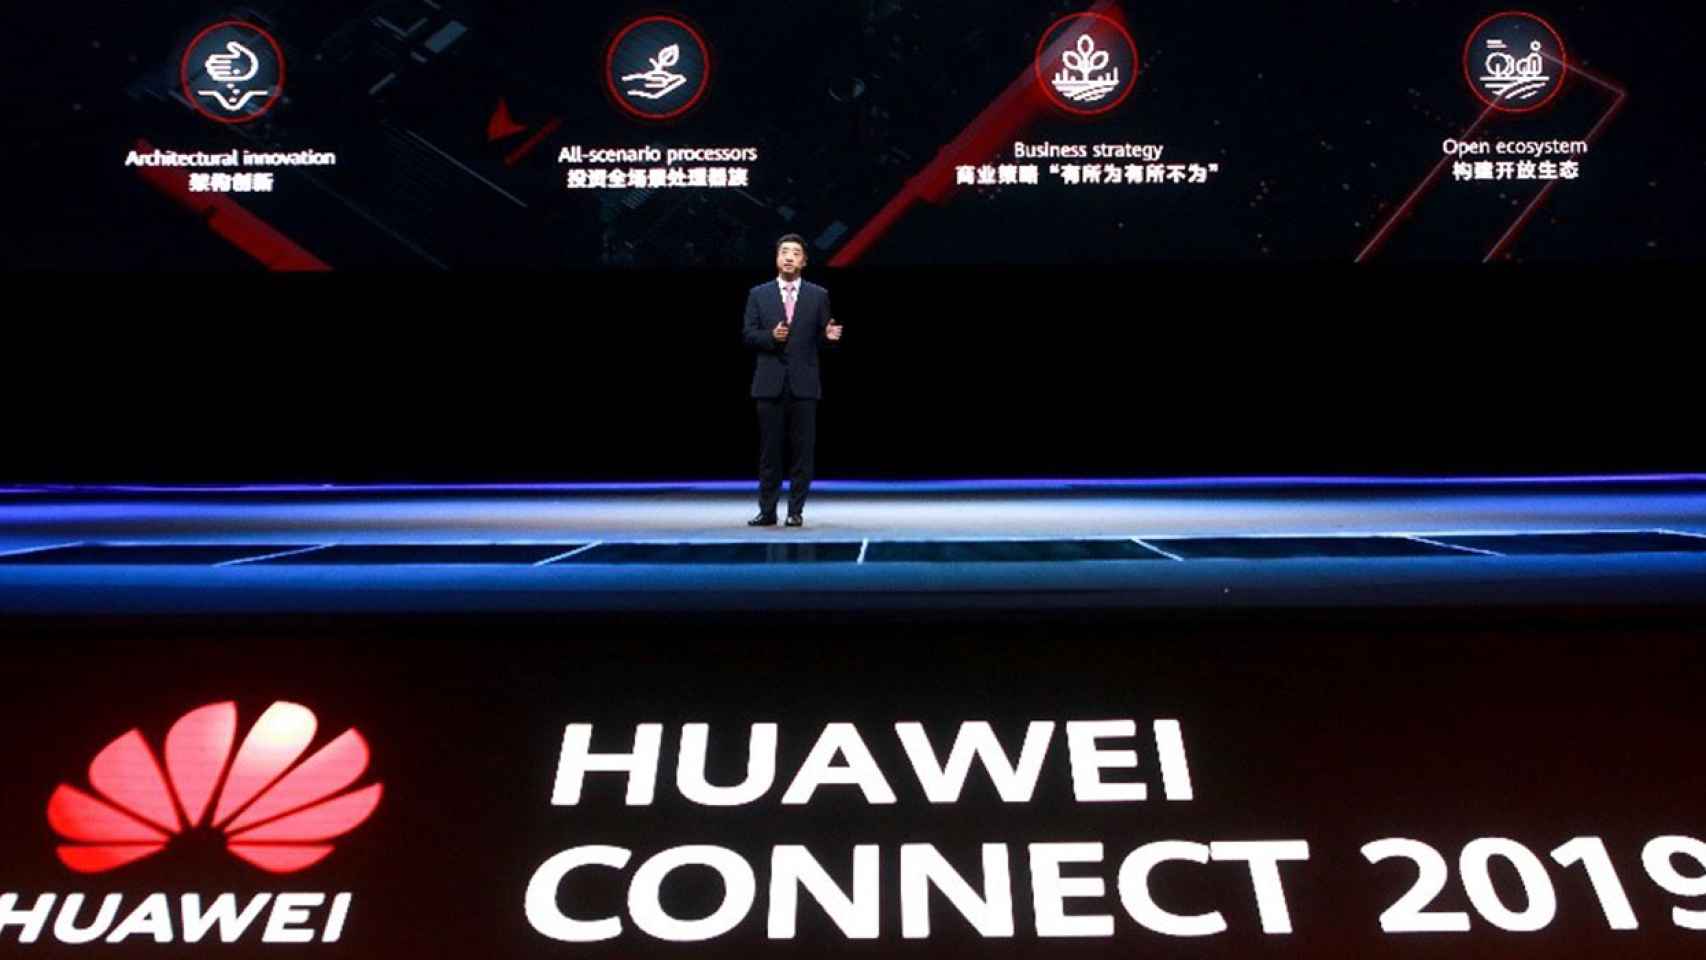 Ken Hu en su discurso inicial en Huawei Connect 2019.